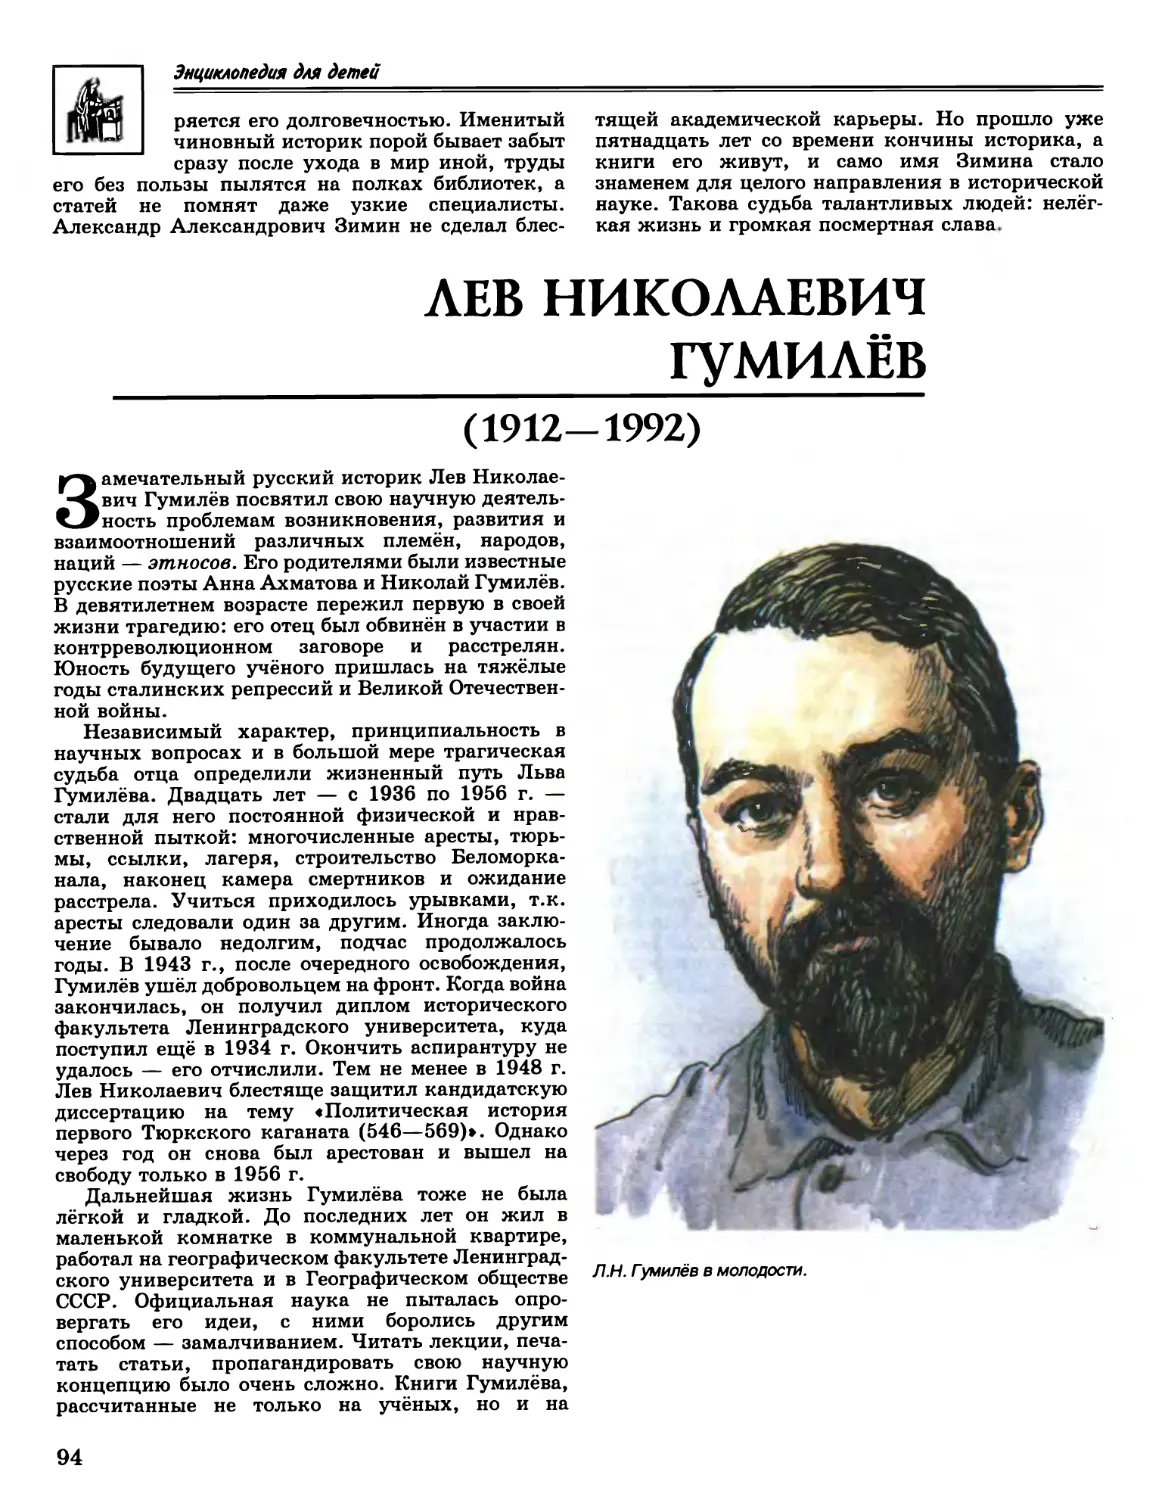 Лев Николаевич Гумилёв